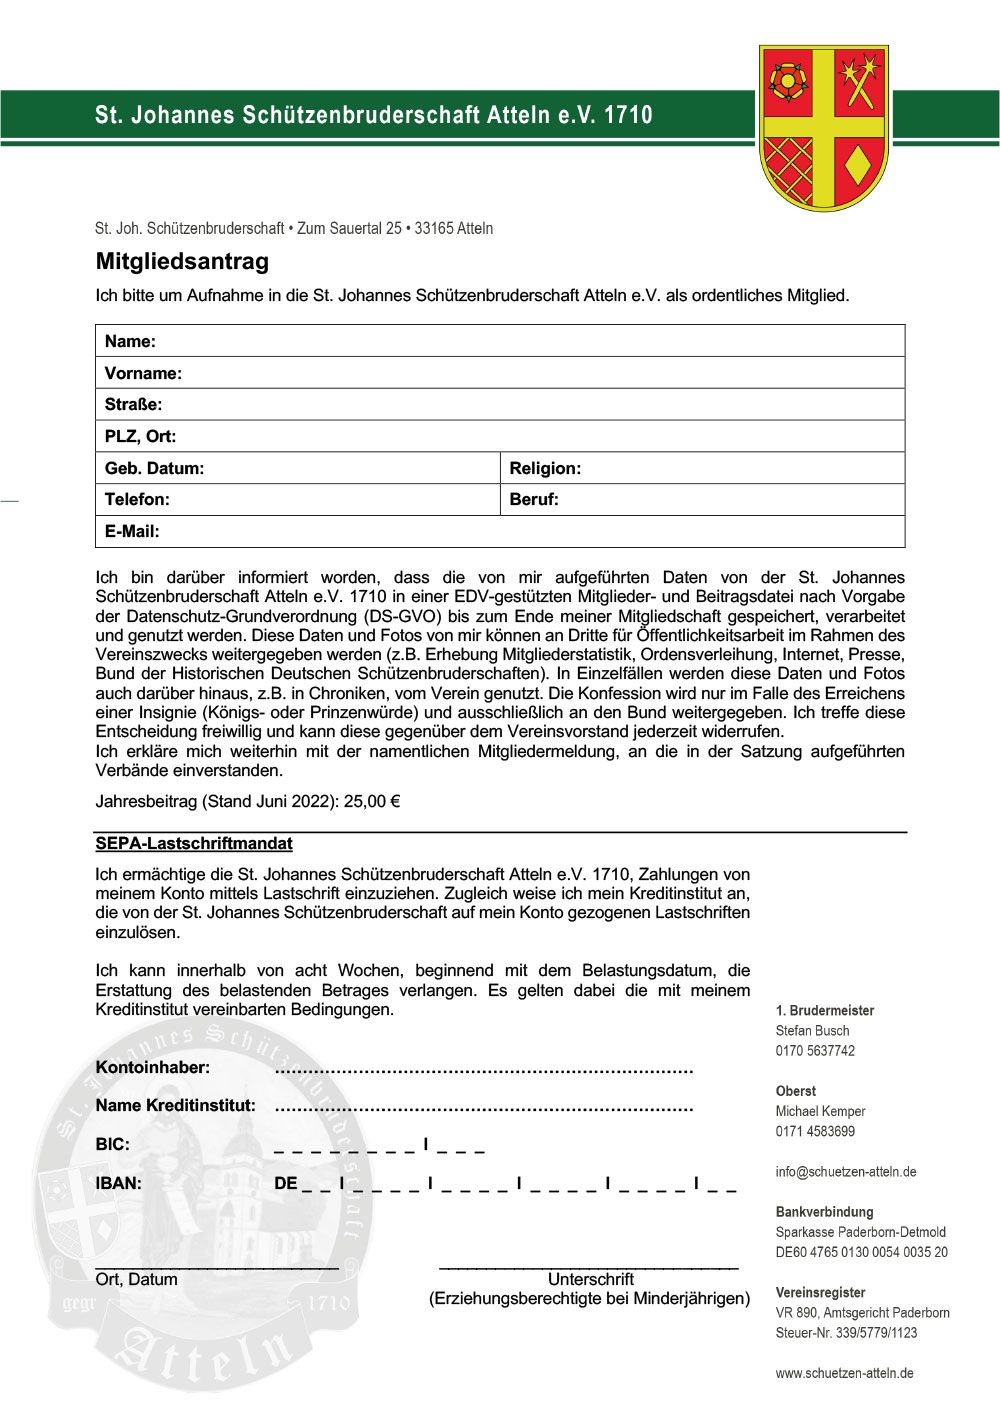 Mitgliedsantrag Schützenverein Atteln